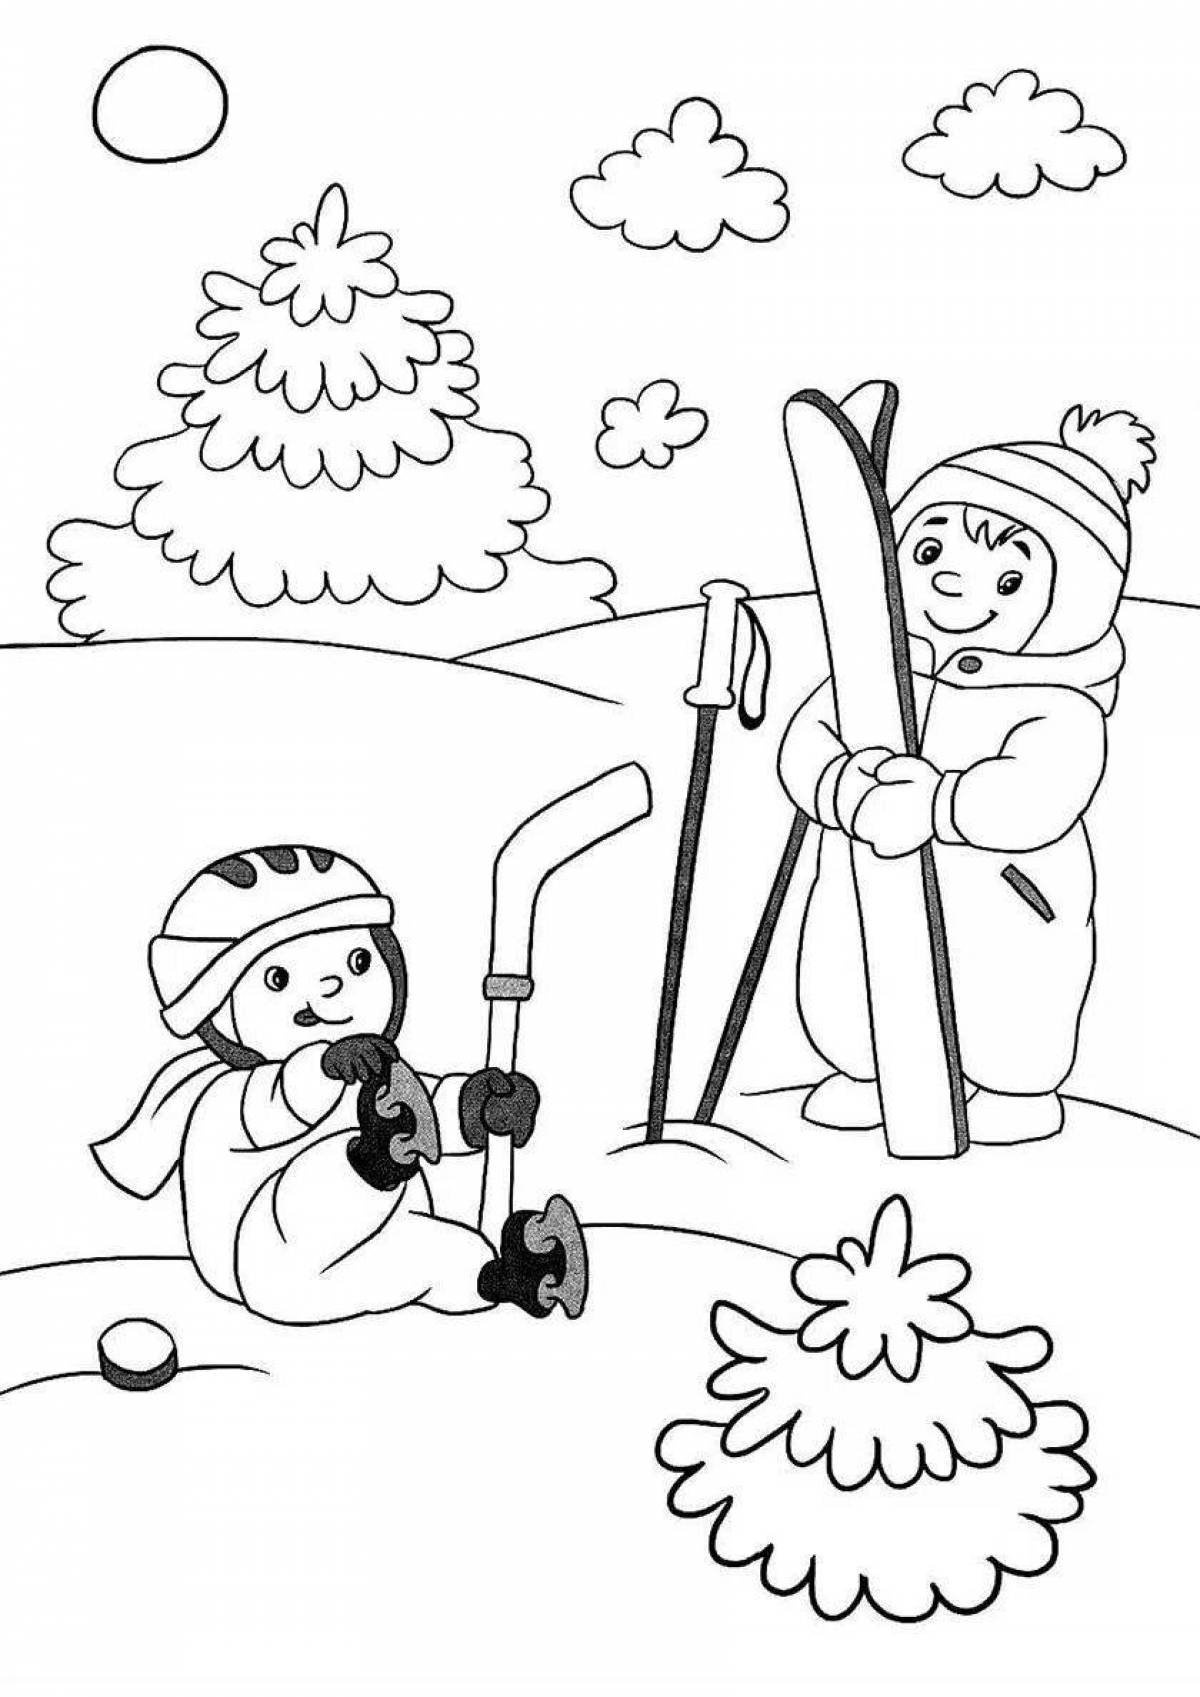 People's winter activities #4